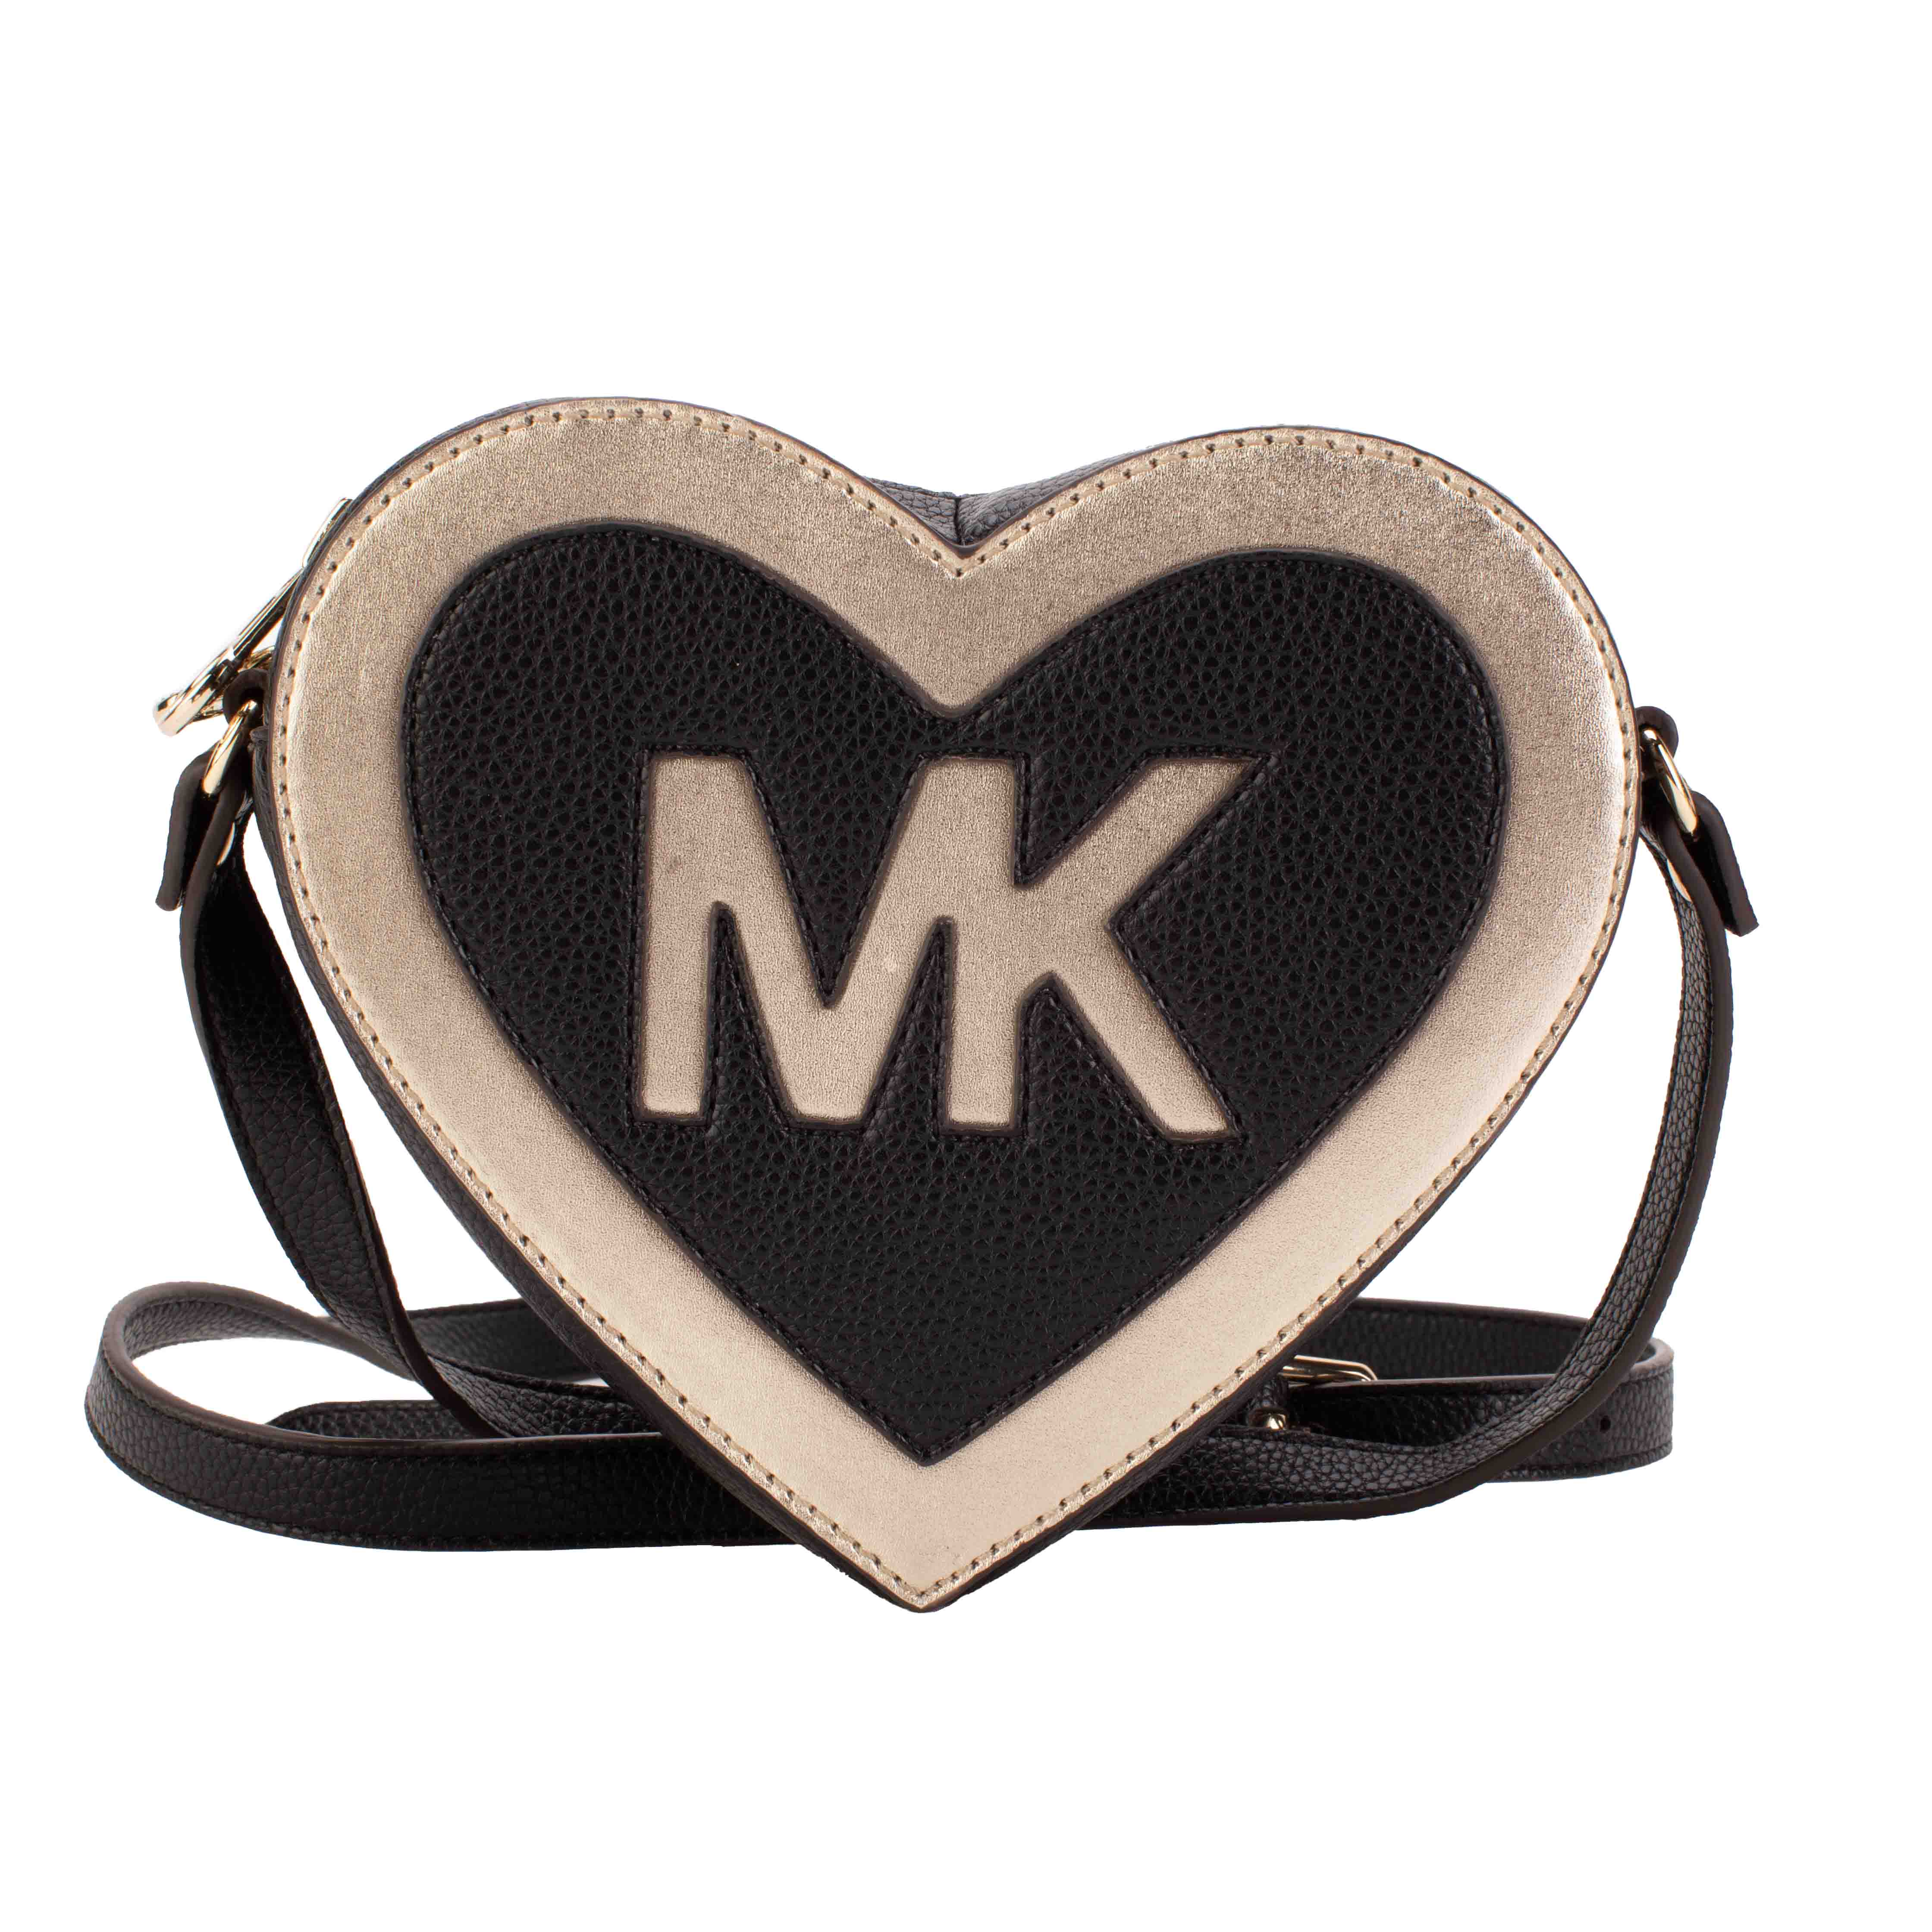 Heart bag with shoulder strap MICHAEL KORS for GIRL